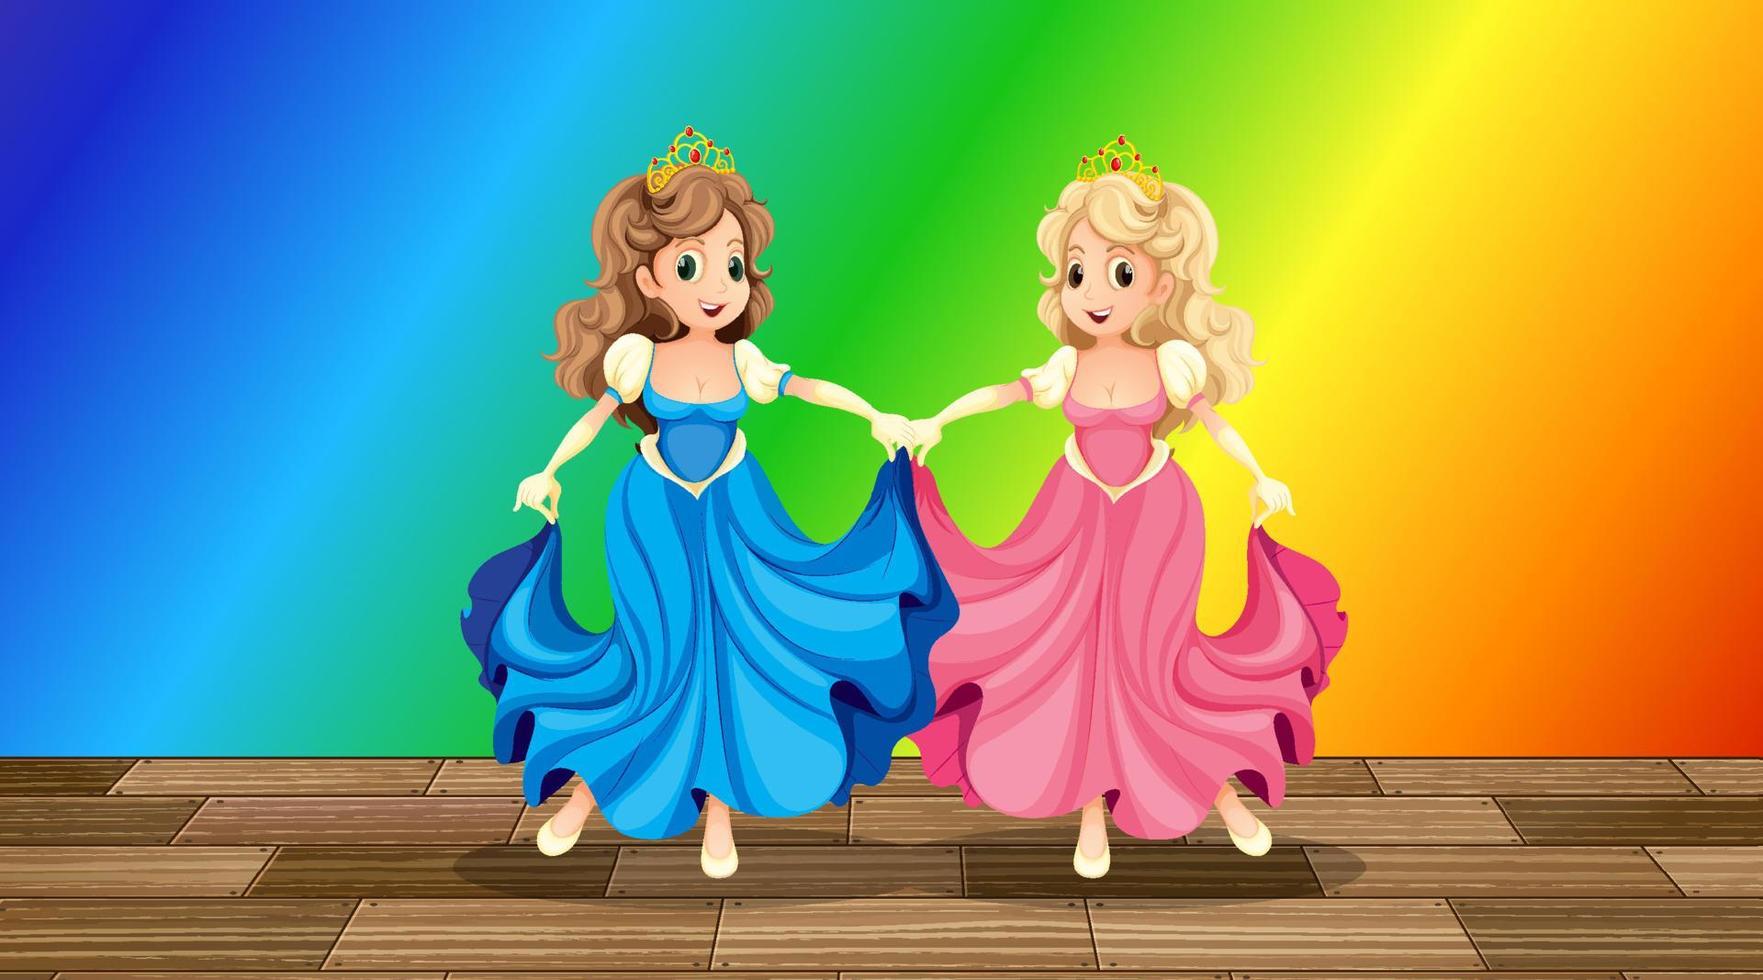 personagem de desenho animado de princesa em fundo gradiente de arco-íris vetor